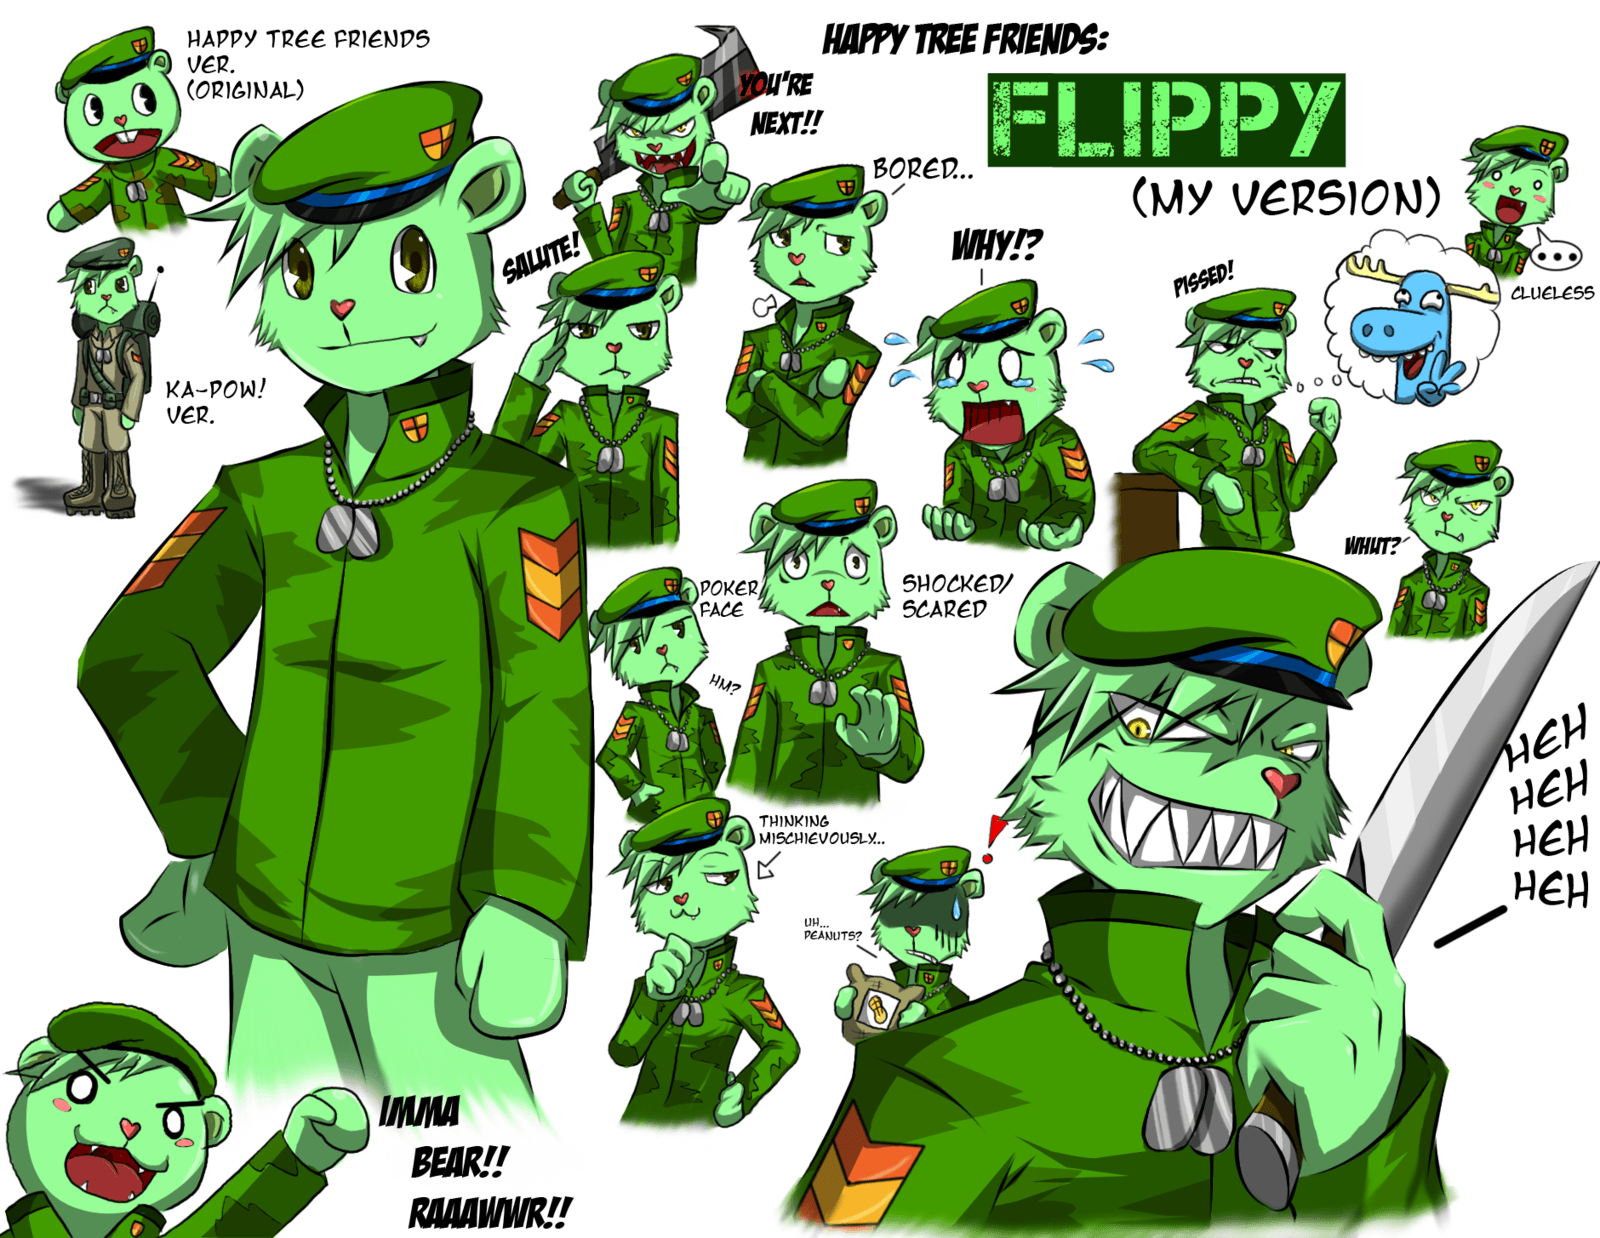 Flippy (Happy Tree Friends). The Family Series